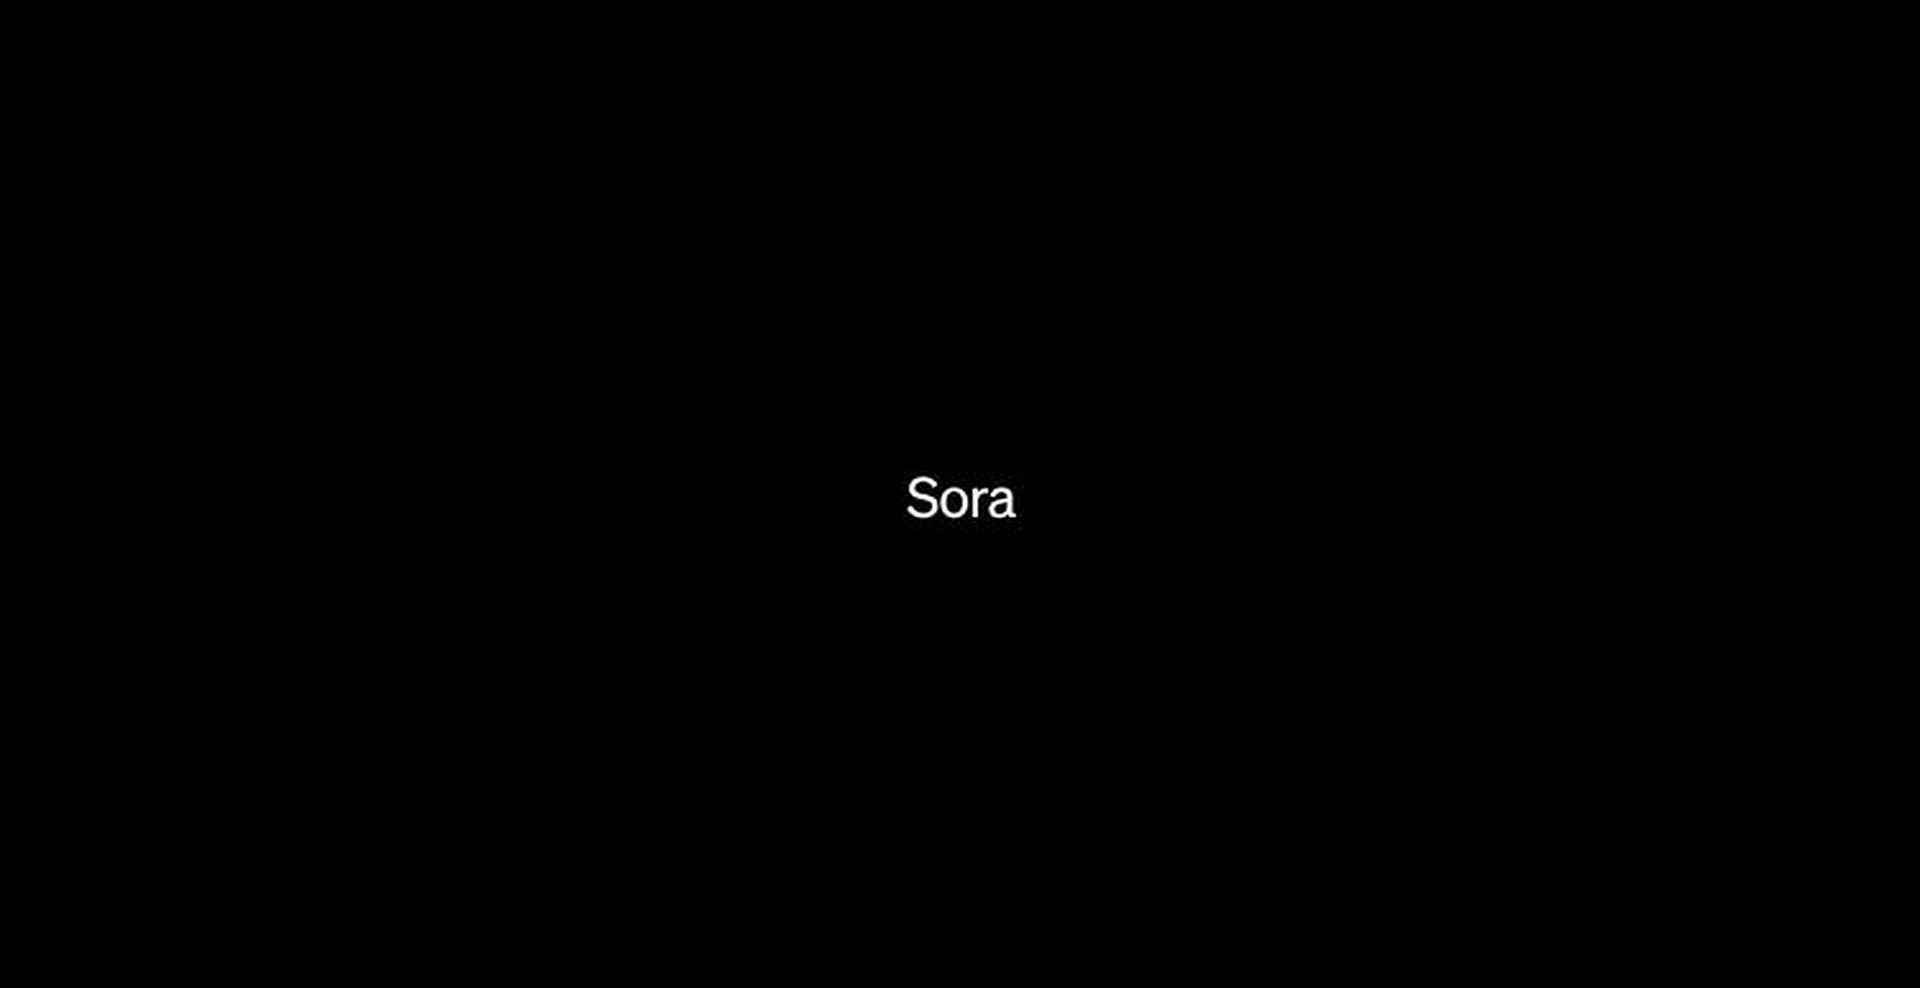 Uitgelegd: is Sora vrij?